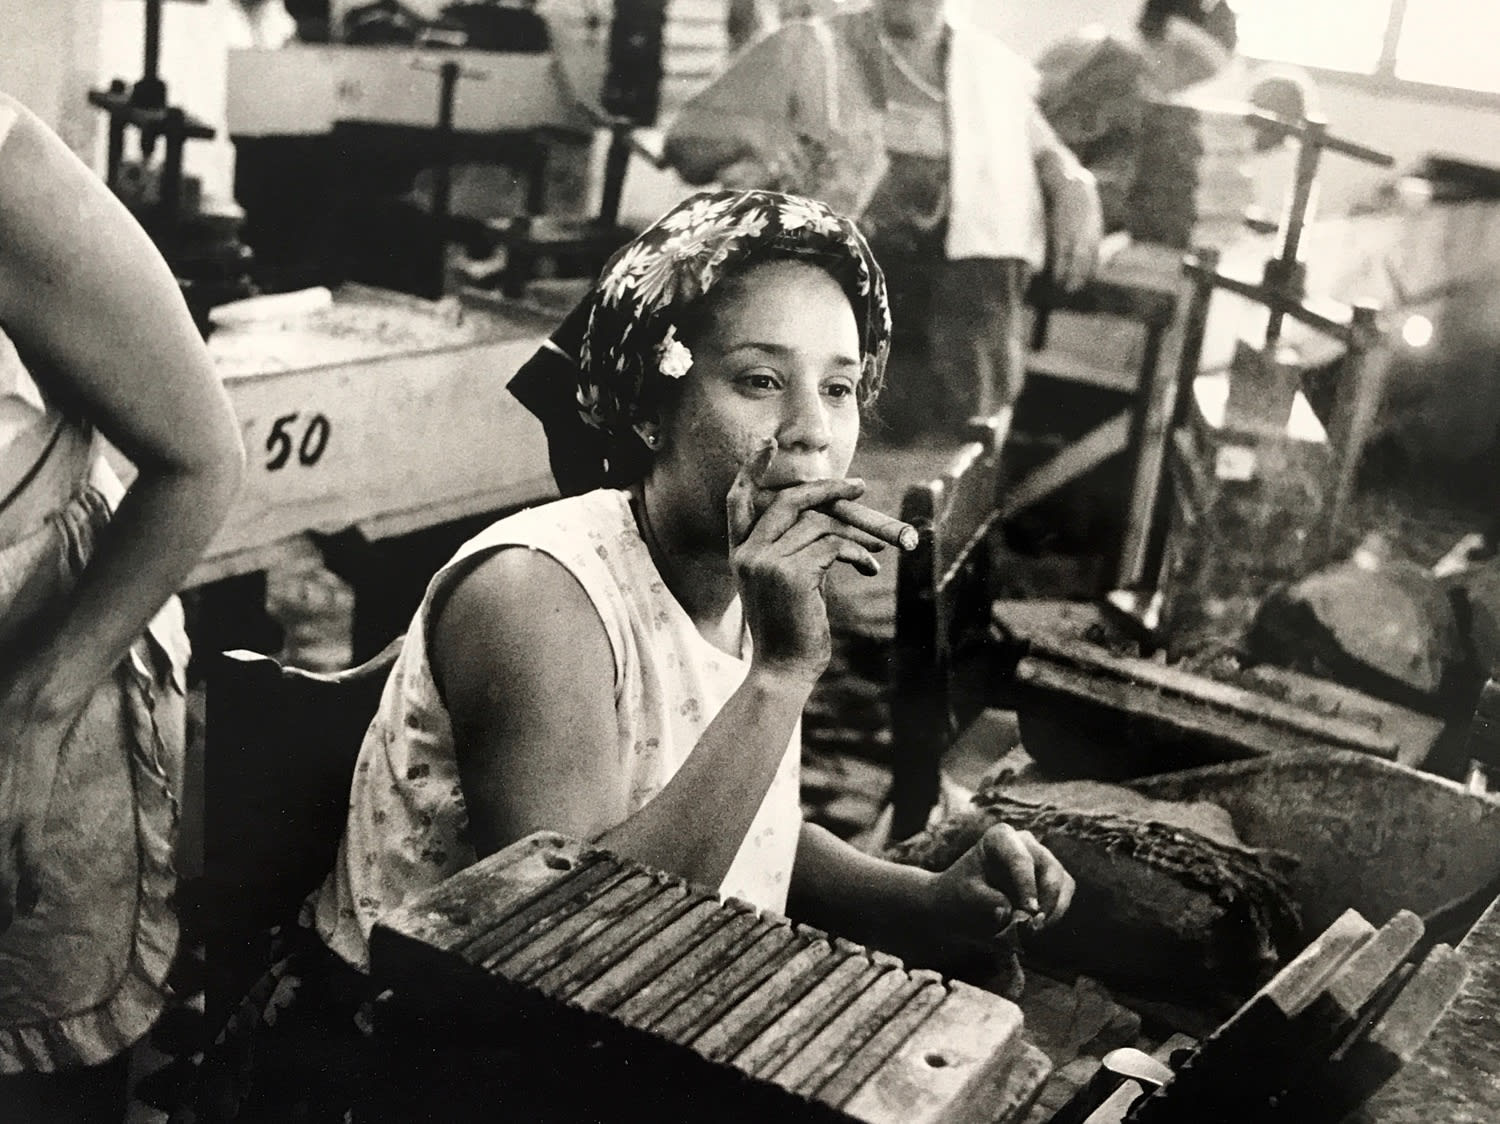 RUSSELL MONK, Partigas Cigar Factory, Havana, Cuba, 1985